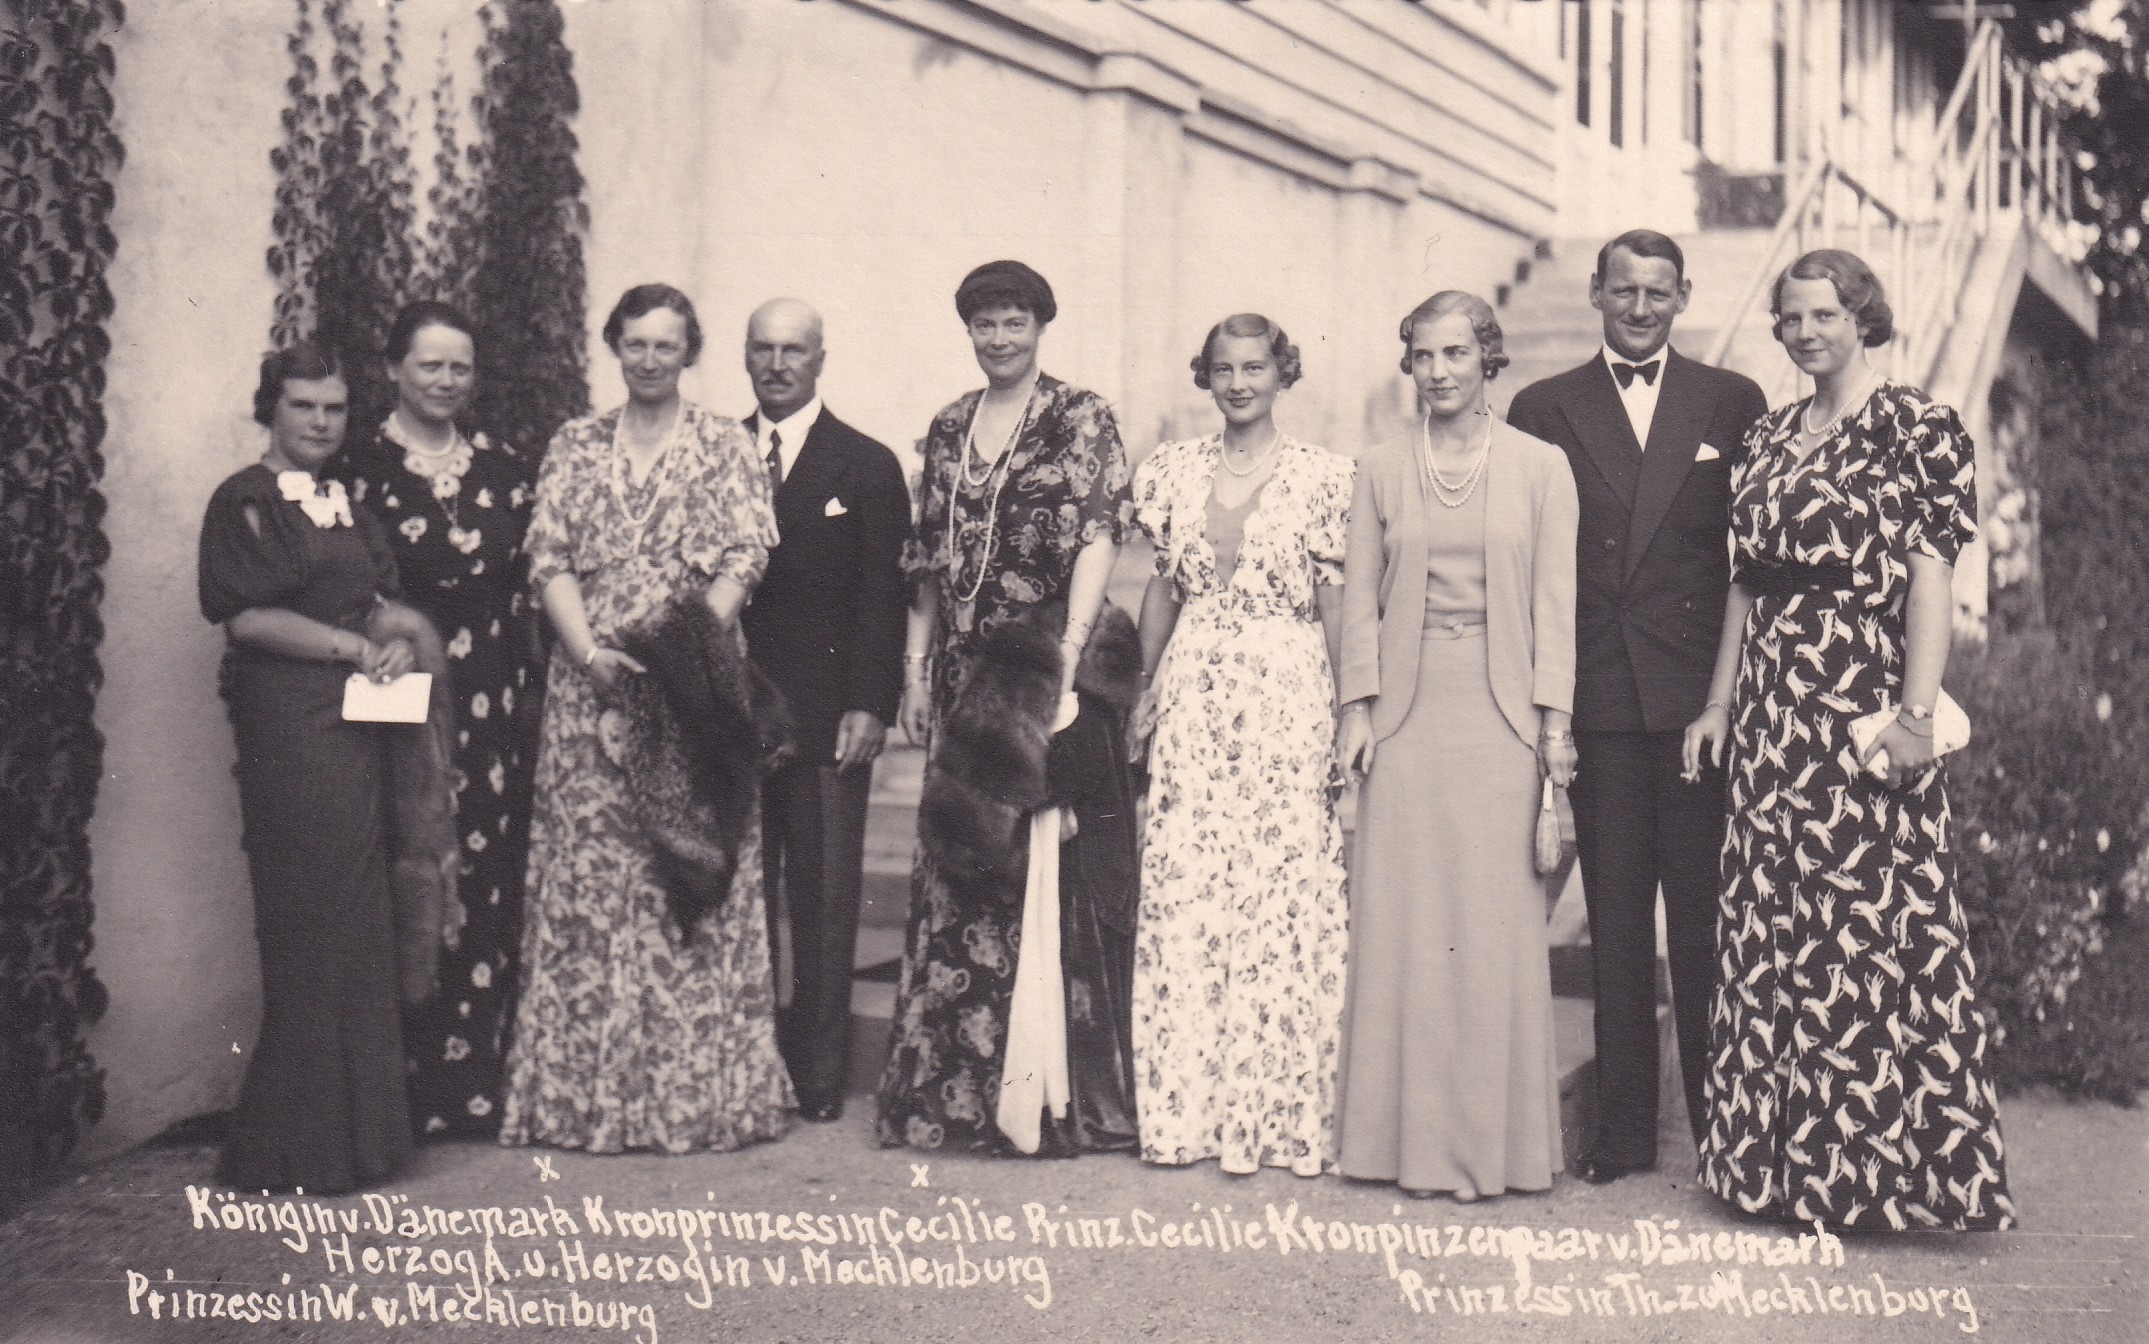 Bildpostkarte mit Gruppenfoto von Angehörigen der Herrscherhäuser Dänemarks, Mecklenburgs und Preußens bei den Bayreuther Festspielen, 1936. (Schloß Wernigerode GmbH RR-F)